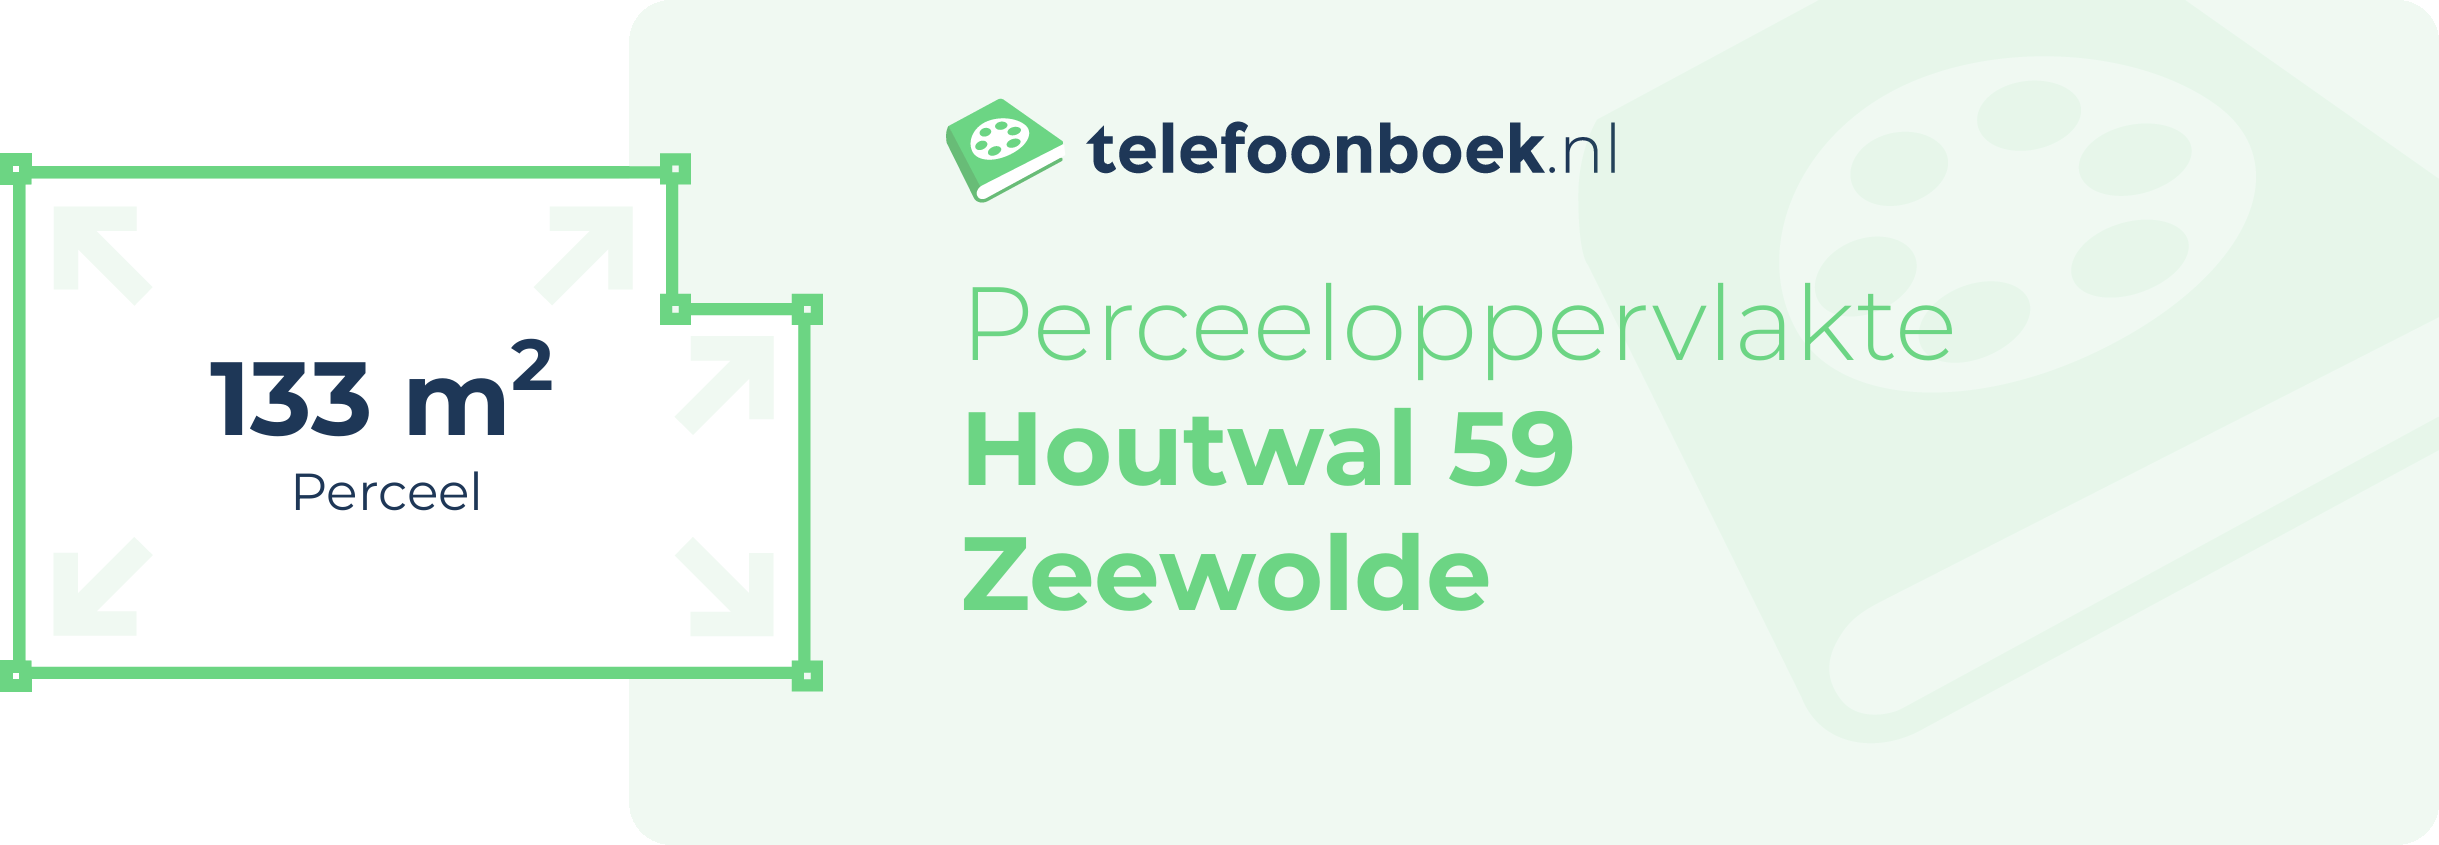 Perceeloppervlakte Houtwal 59 Zeewolde